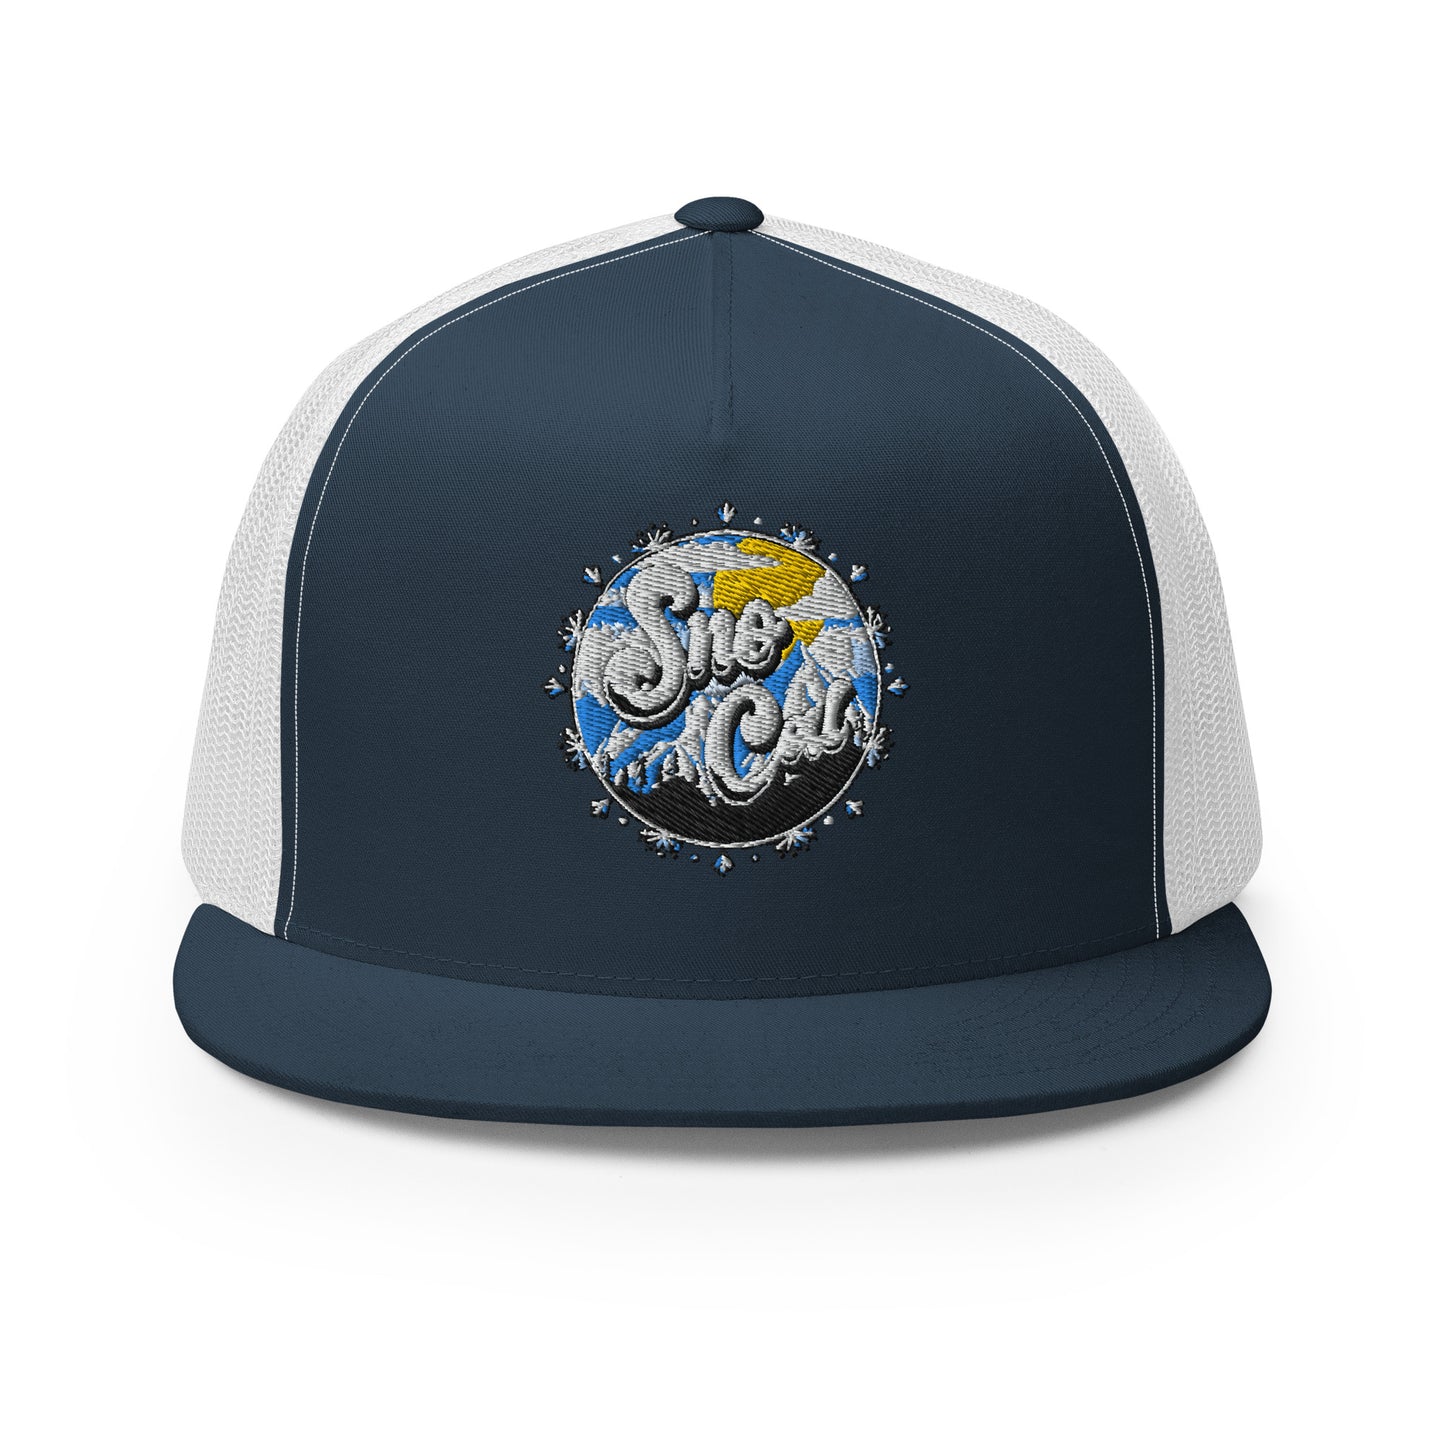 Sno Cal Trucker Cap (circle logo)